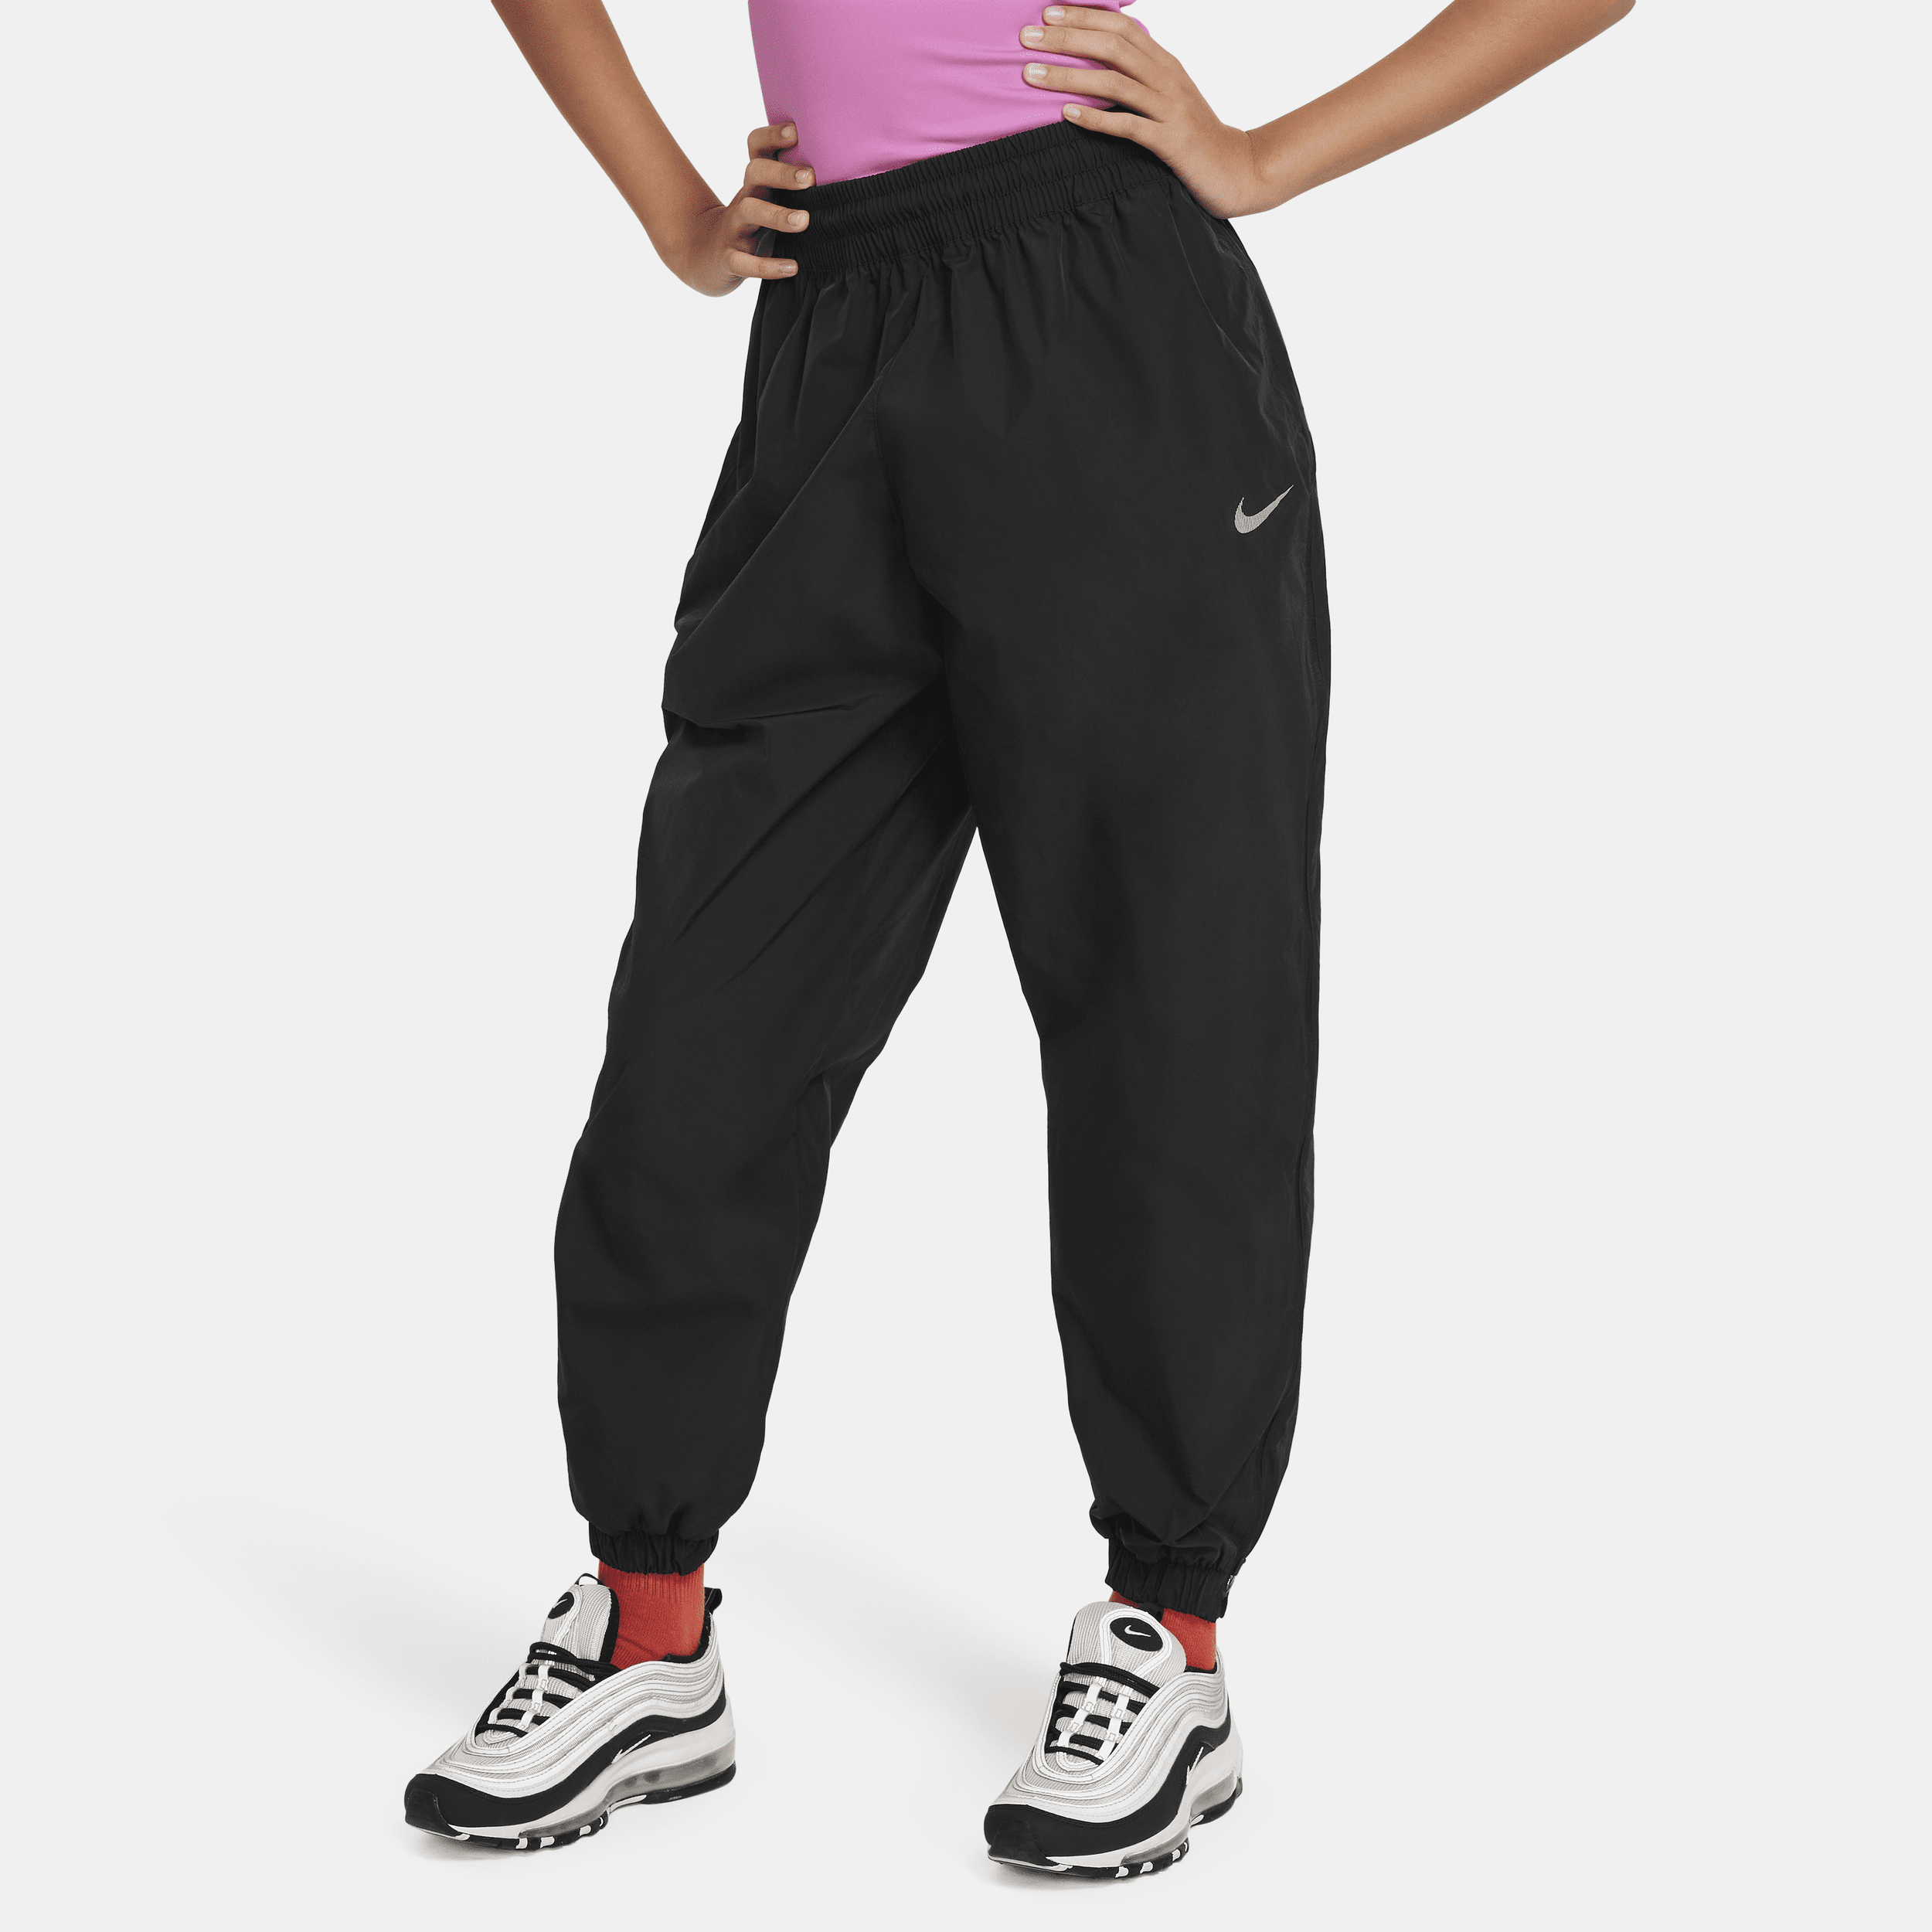 Pantaloni in tessuto Nike Sportswear – Ragazza - Nero